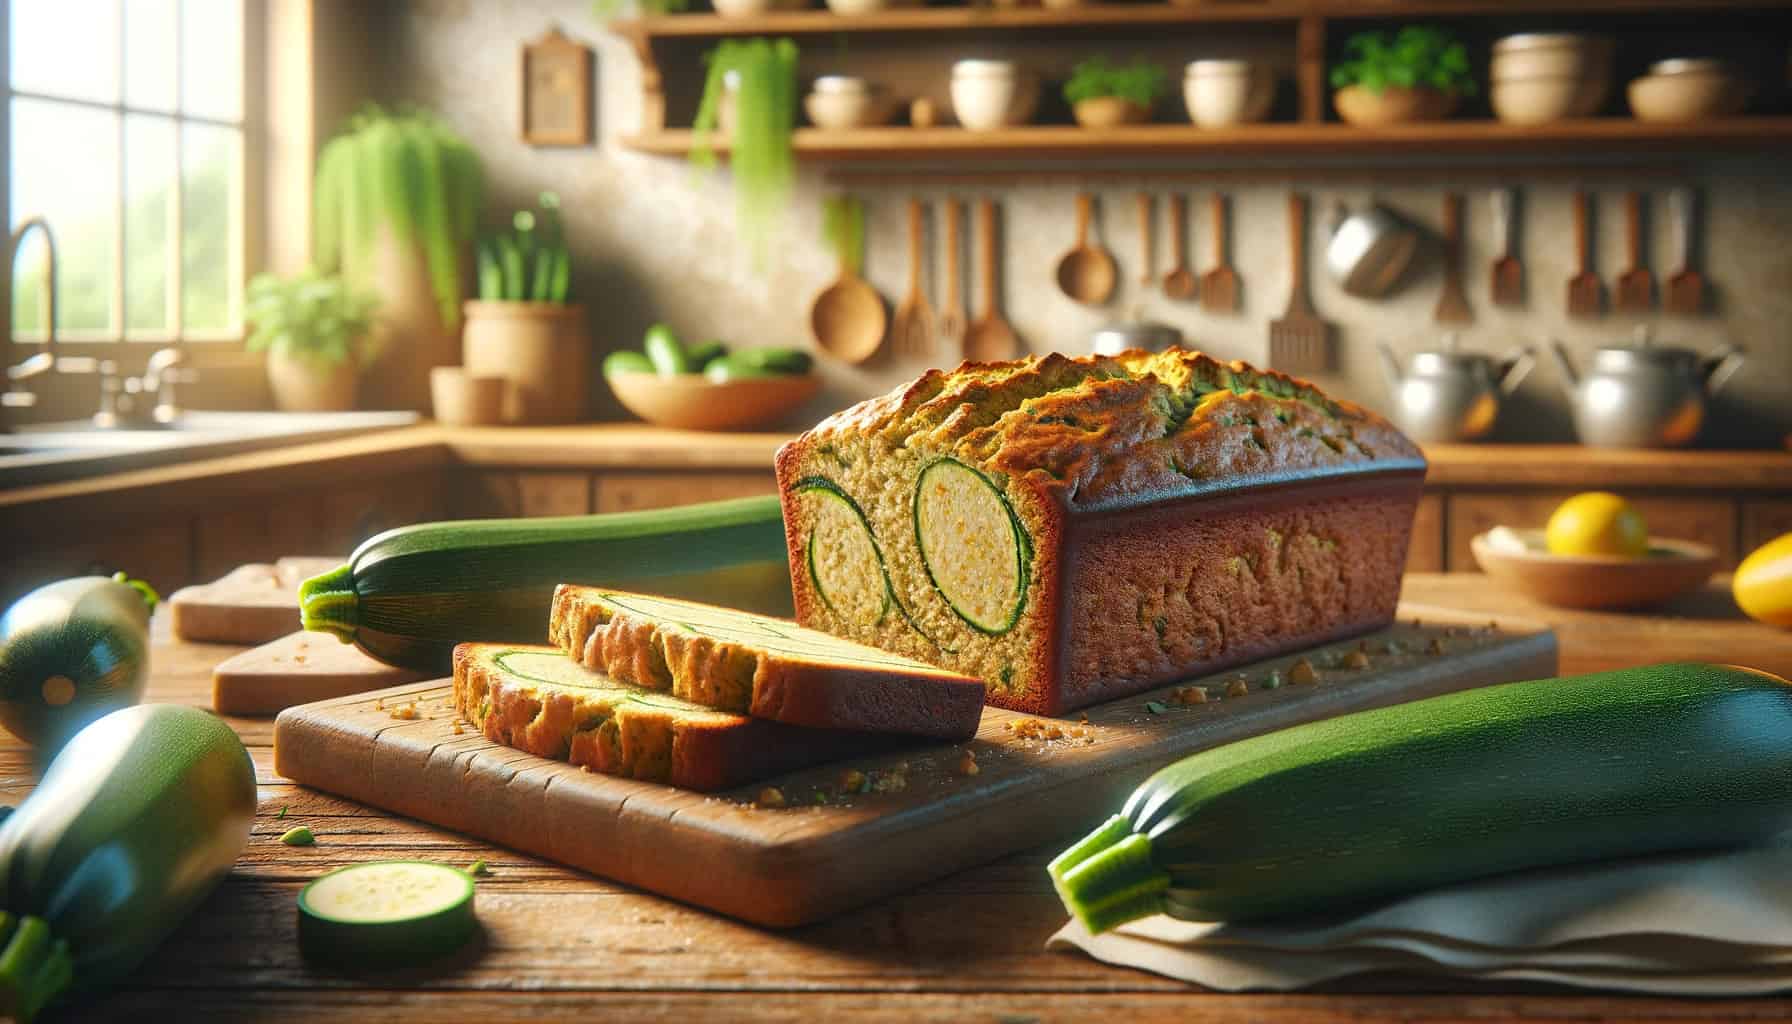 Gluten-free zucchini bread